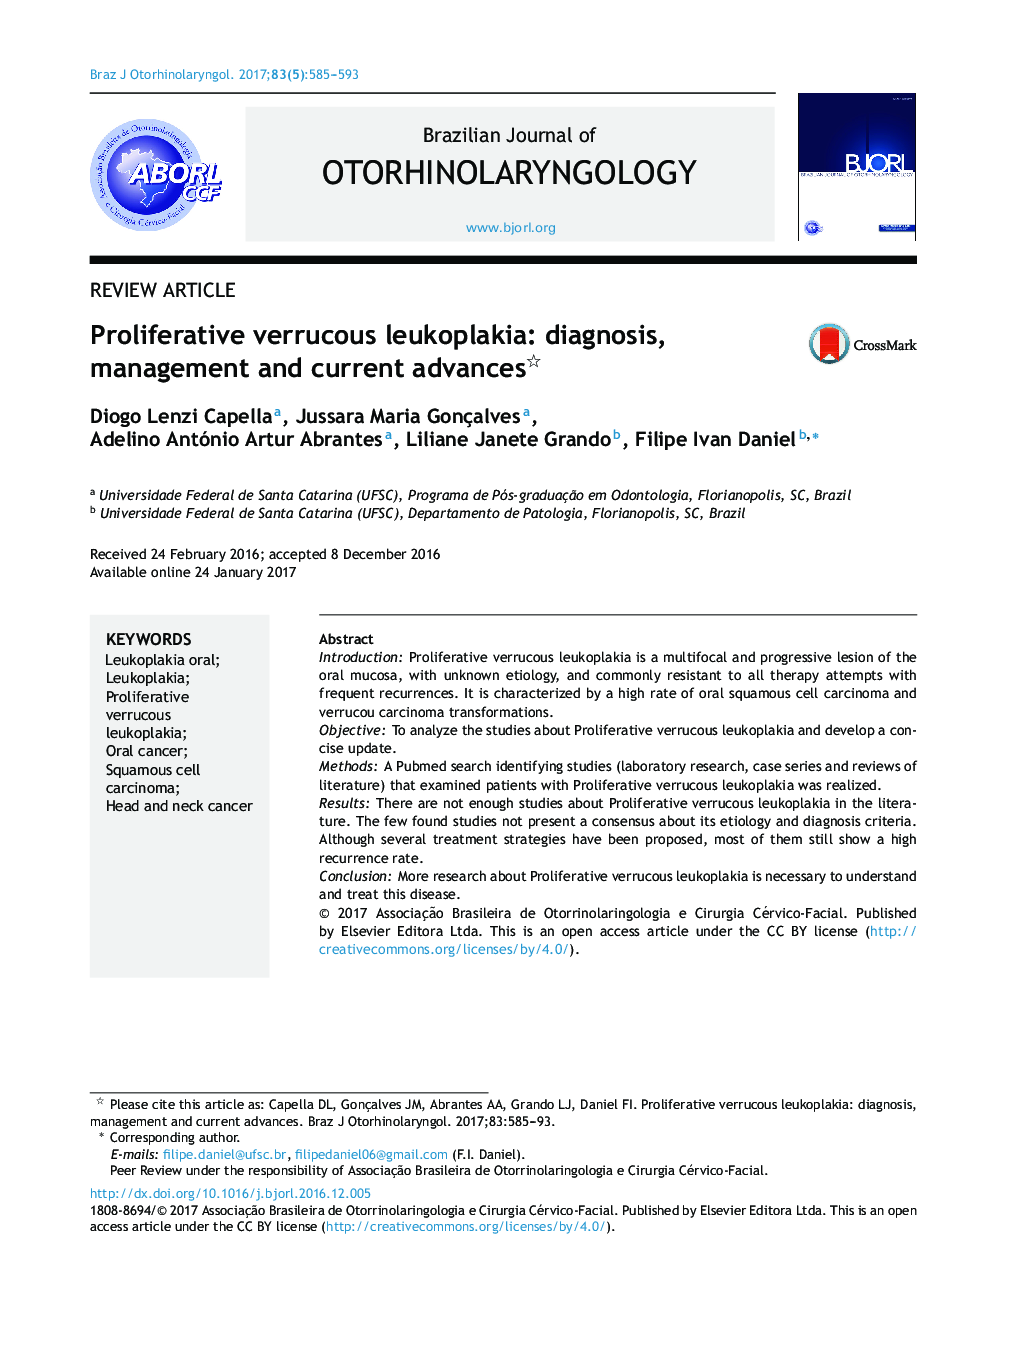 لوکوپلاکیک غلیظ کننده پرولیفراتیو: تشخیص، مدیریت و پیشرفتهای جاری 